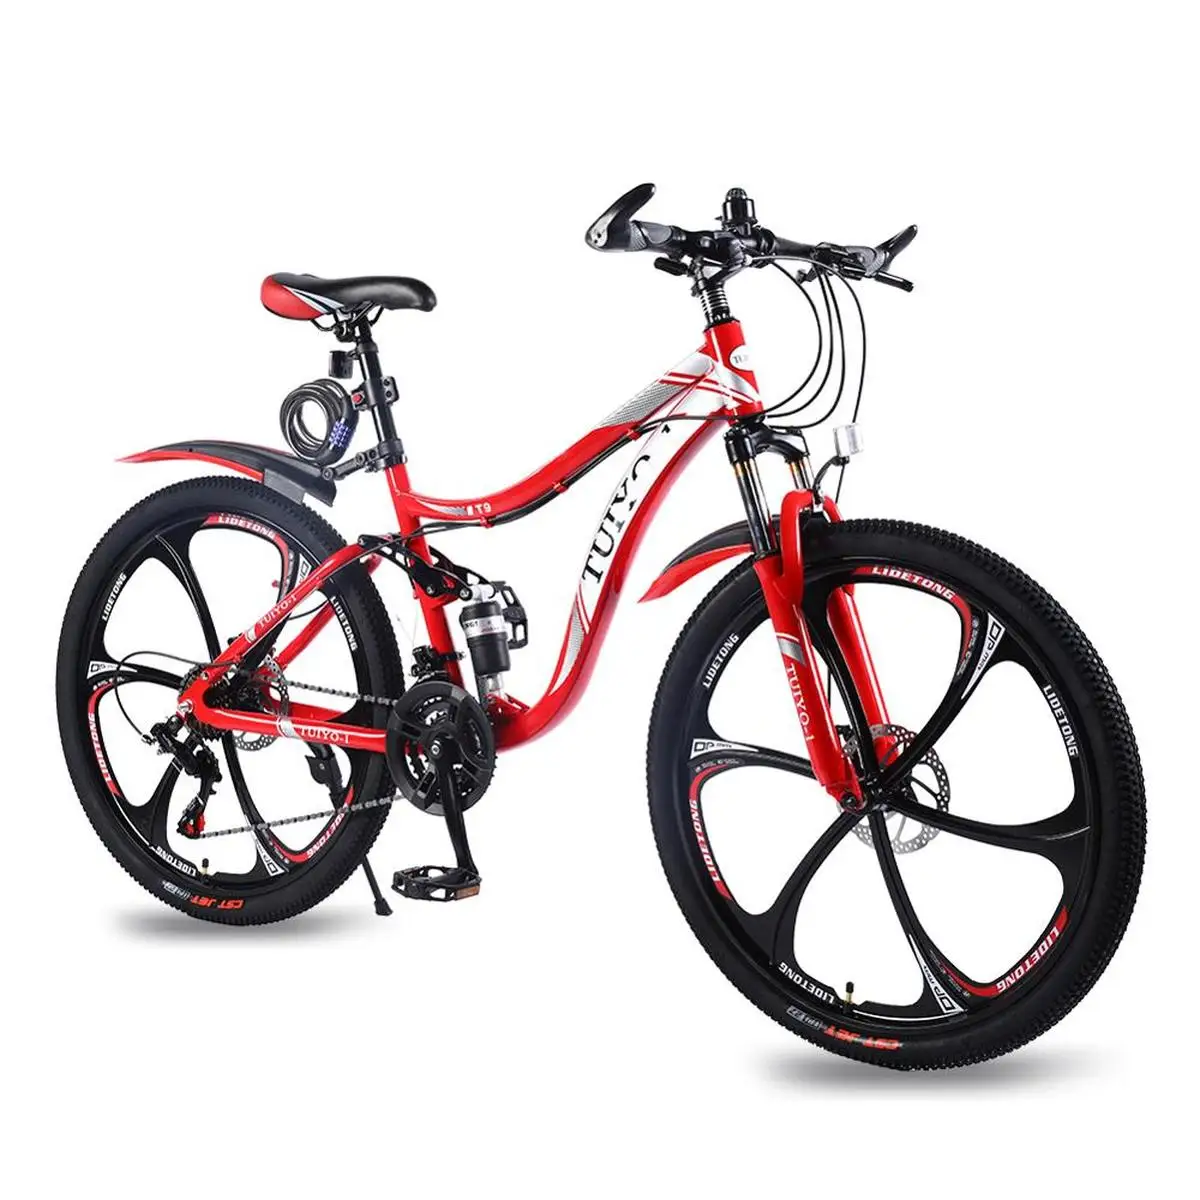 TUIYO-1 T9 горный велосипед 21 скорость 26 дюймов Стальная Рама углеродный велосипед с дисковым тормозом Профессиональный Mtb седло Shimano дорожный велосипед